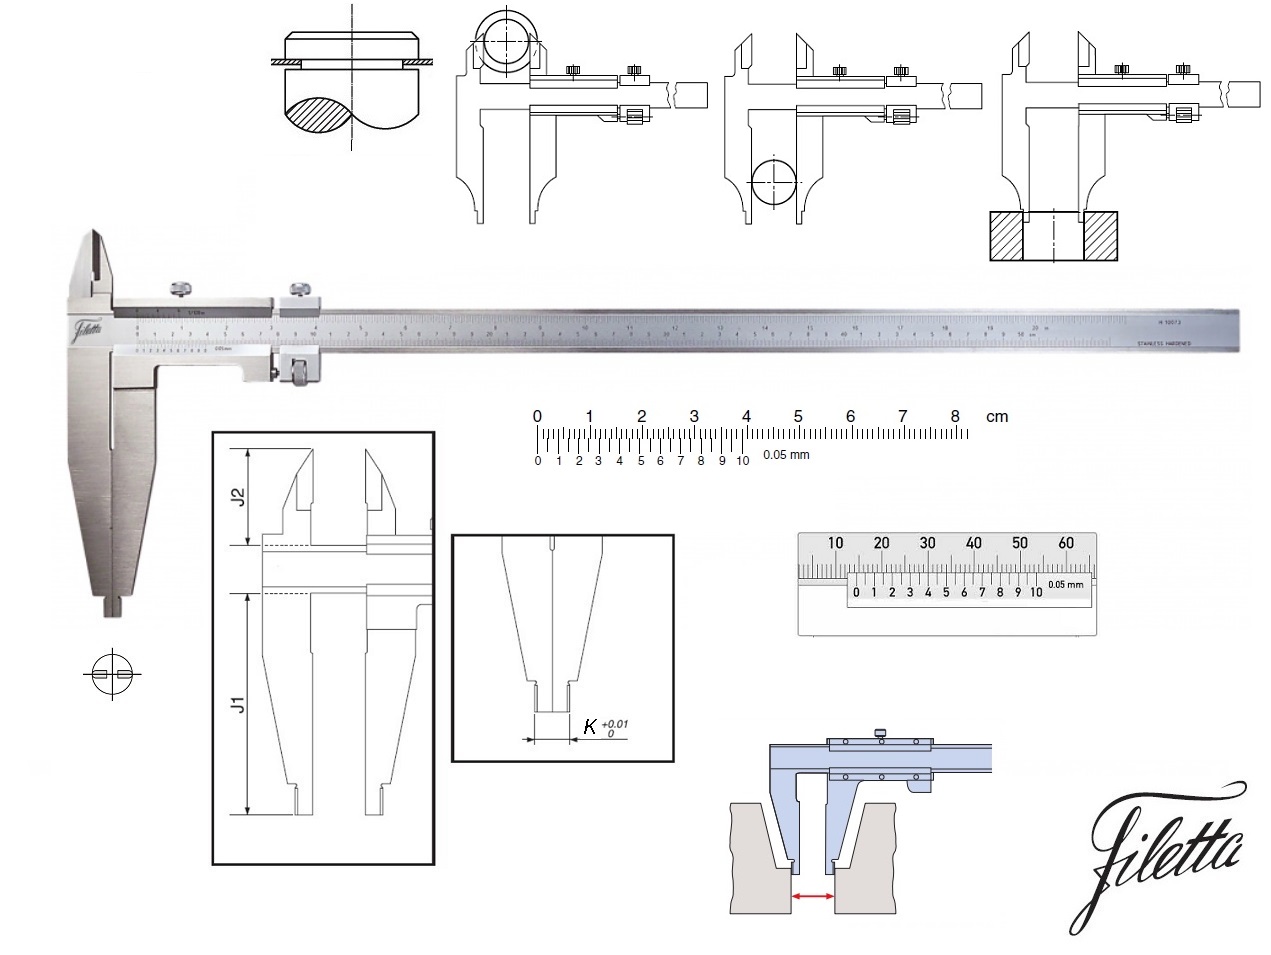 Posuvné měřítko Filetta 0-1000 mm, čelisti 150 mm, s měřicími nožíky pro vnější měření